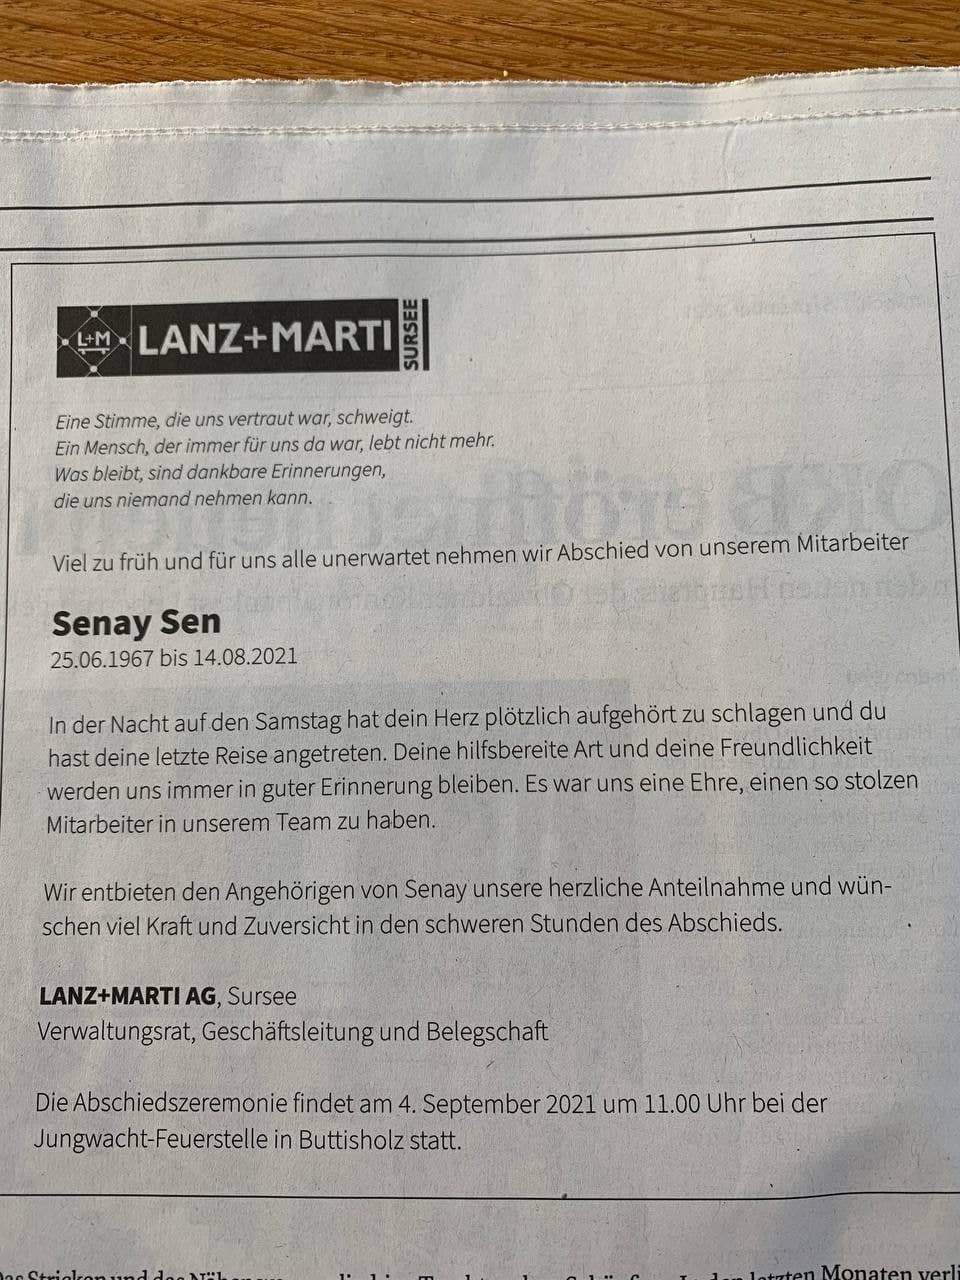 GENimpfmord Schweiz 1.9.2021: Senay Sen
                  "unerwartet gestorben" 57 Jahre alt